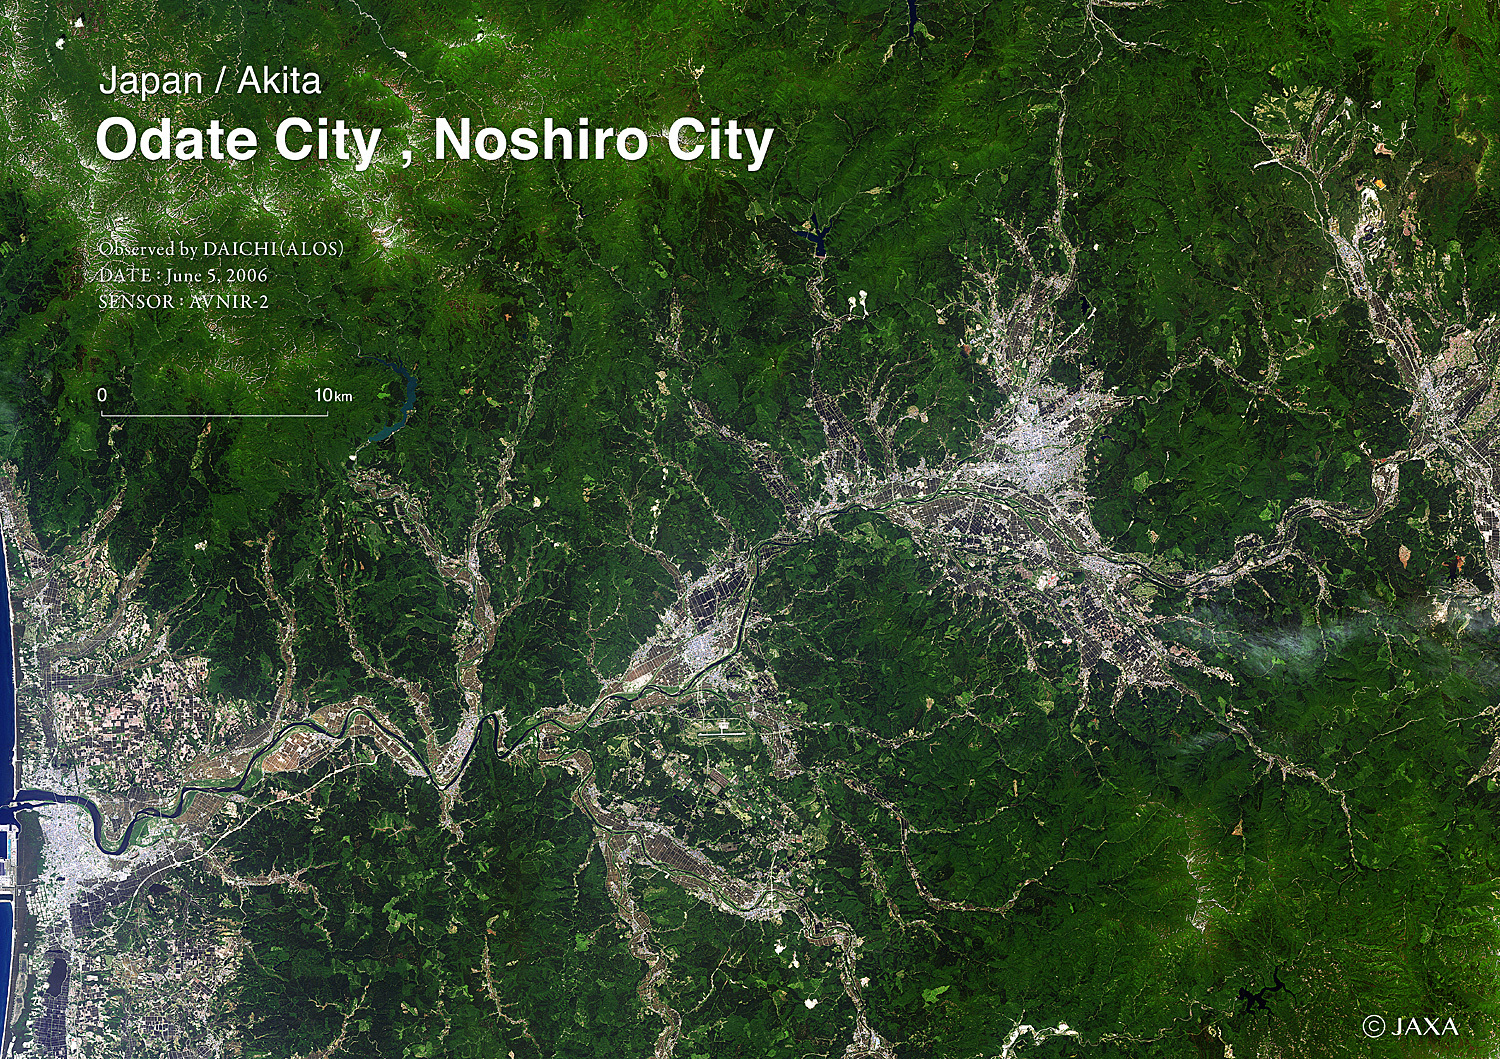 だいちから見た日本の都市 秋田市:衛星画像（ポスター仕上げ）